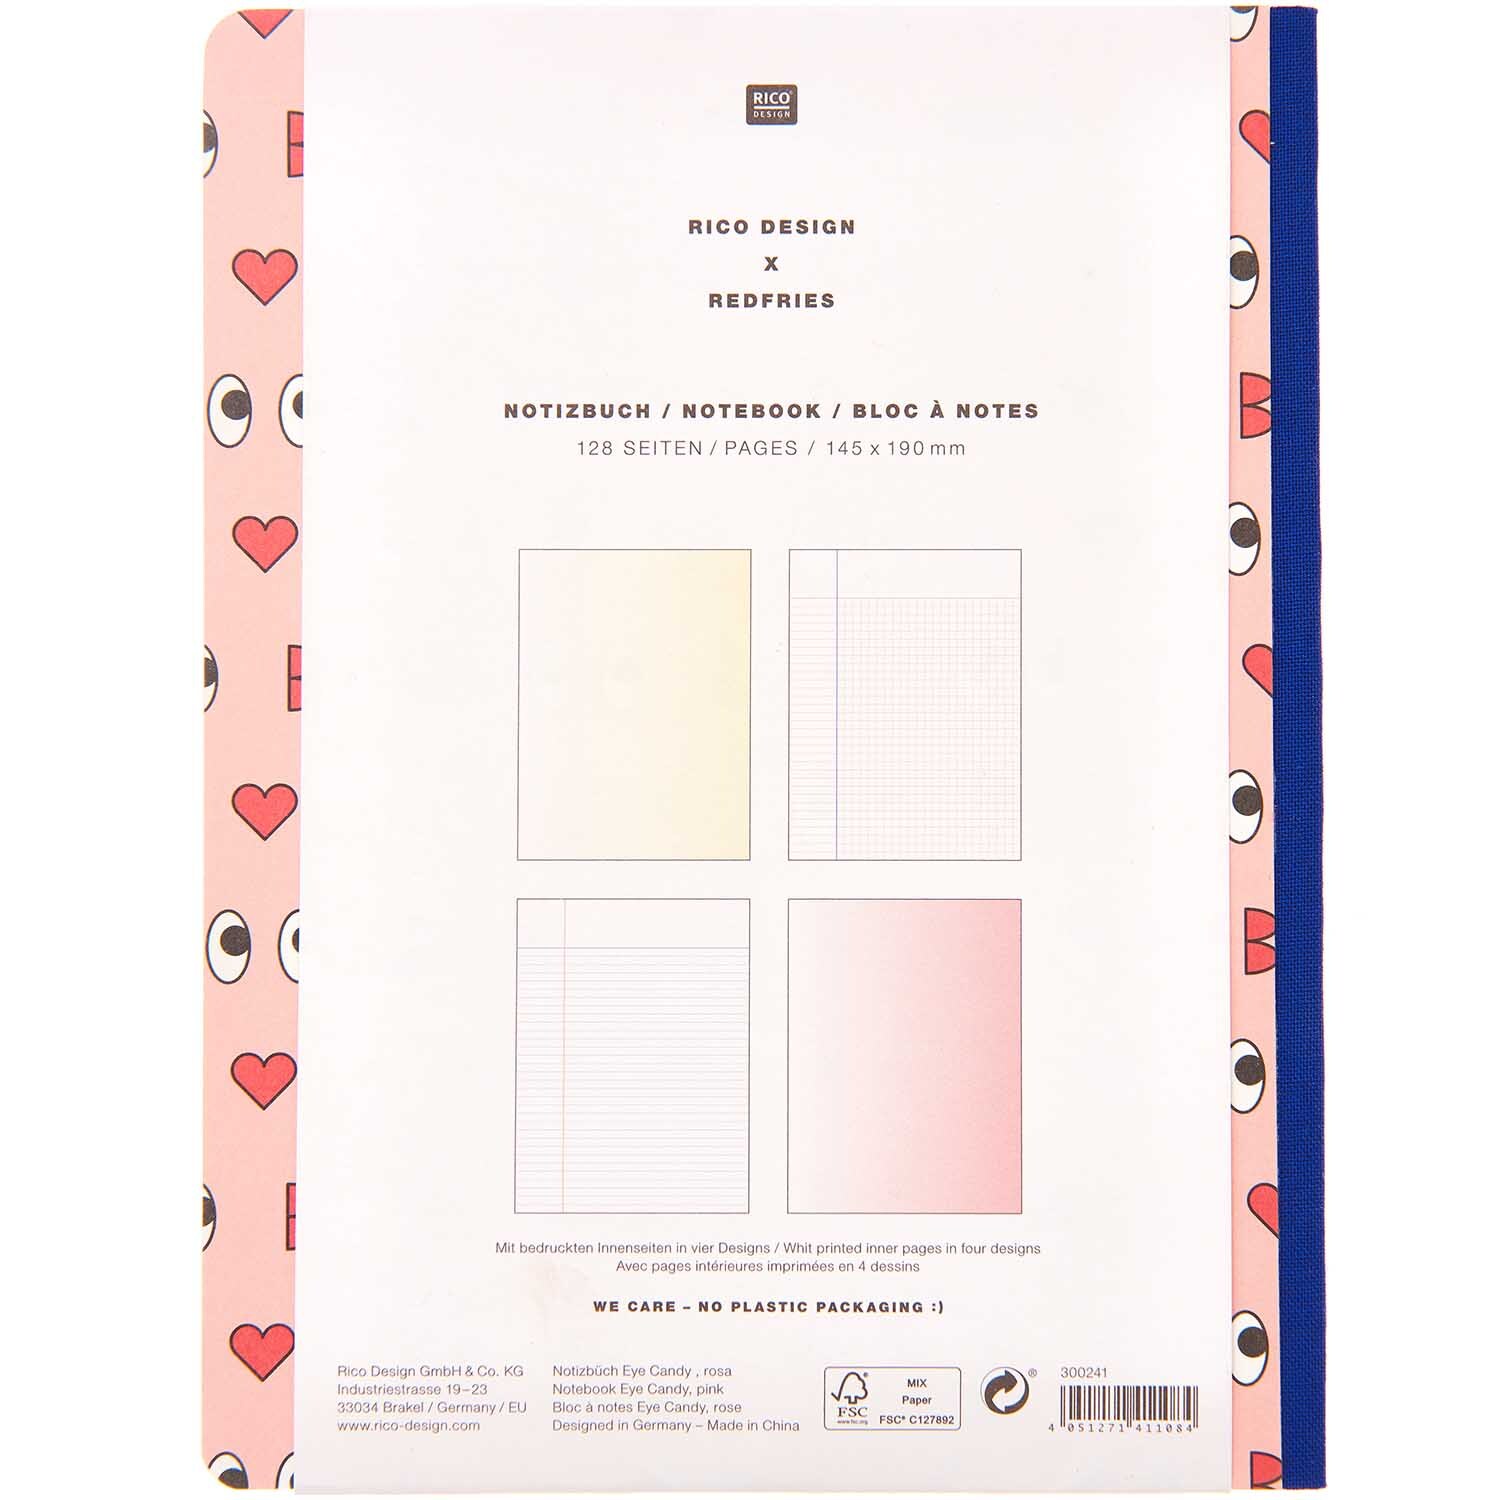 Rico Design x Redfries Notizbuch Liebe 14,5x19cm 128 Seiten